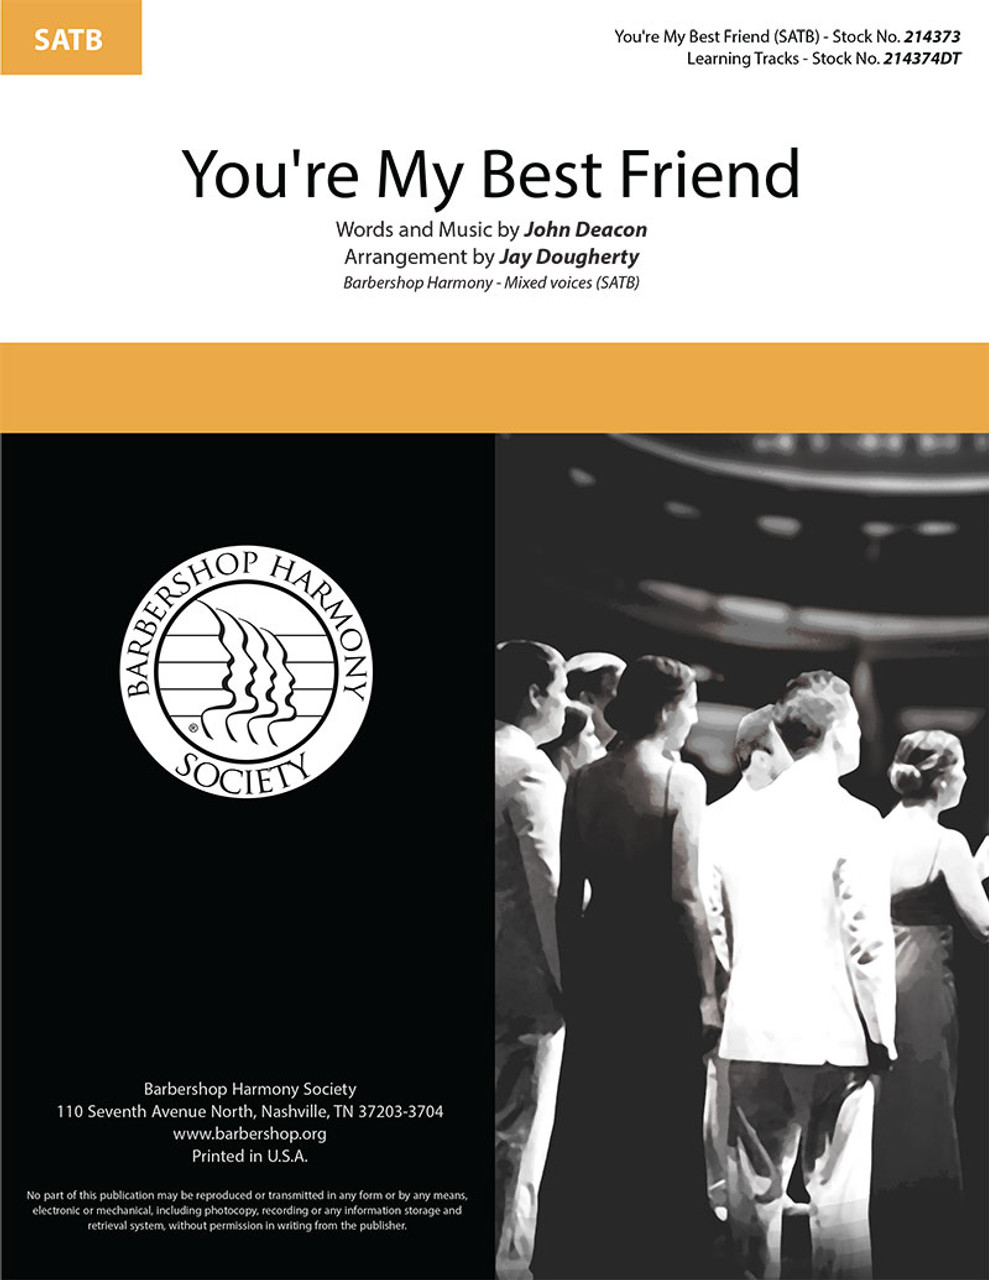 You're My Best Friend (SATB) (arr. Dougherty)